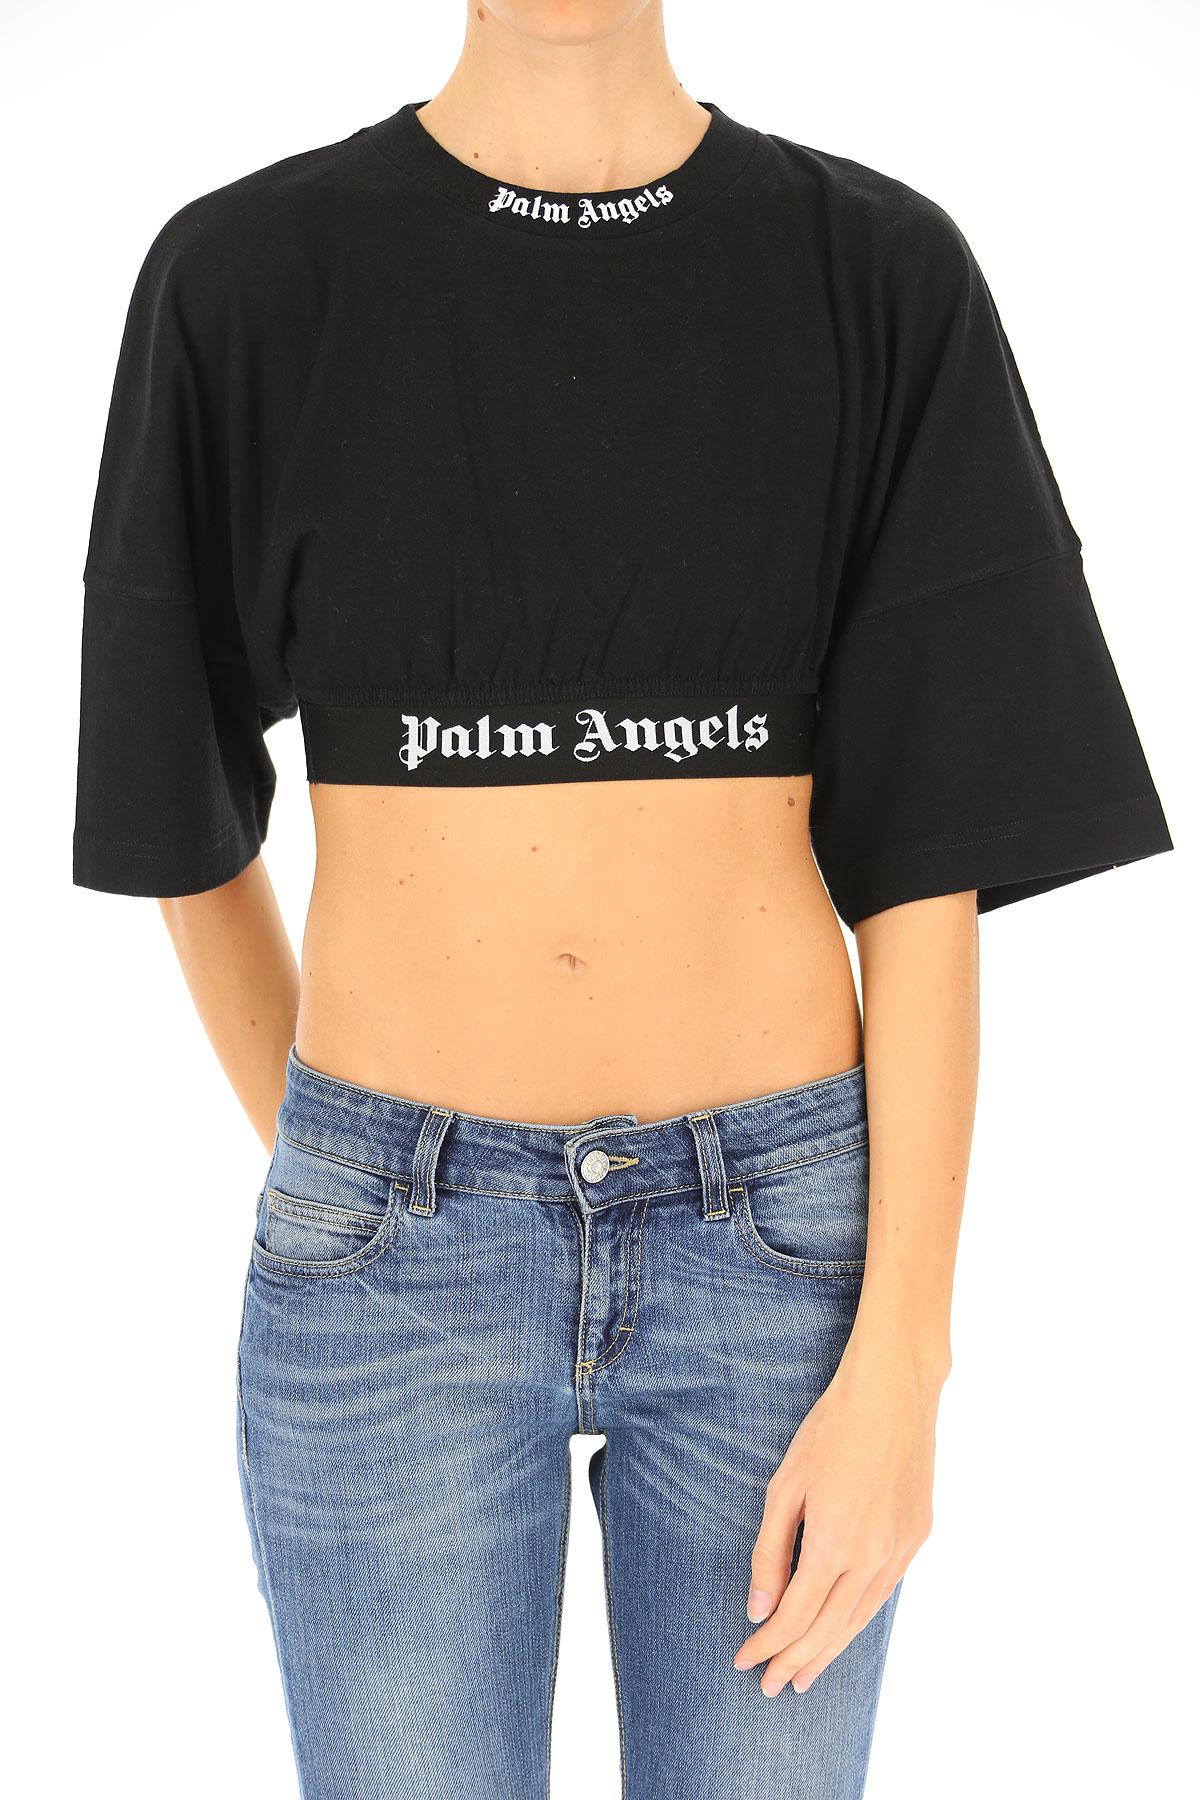 palm angels women's shirt